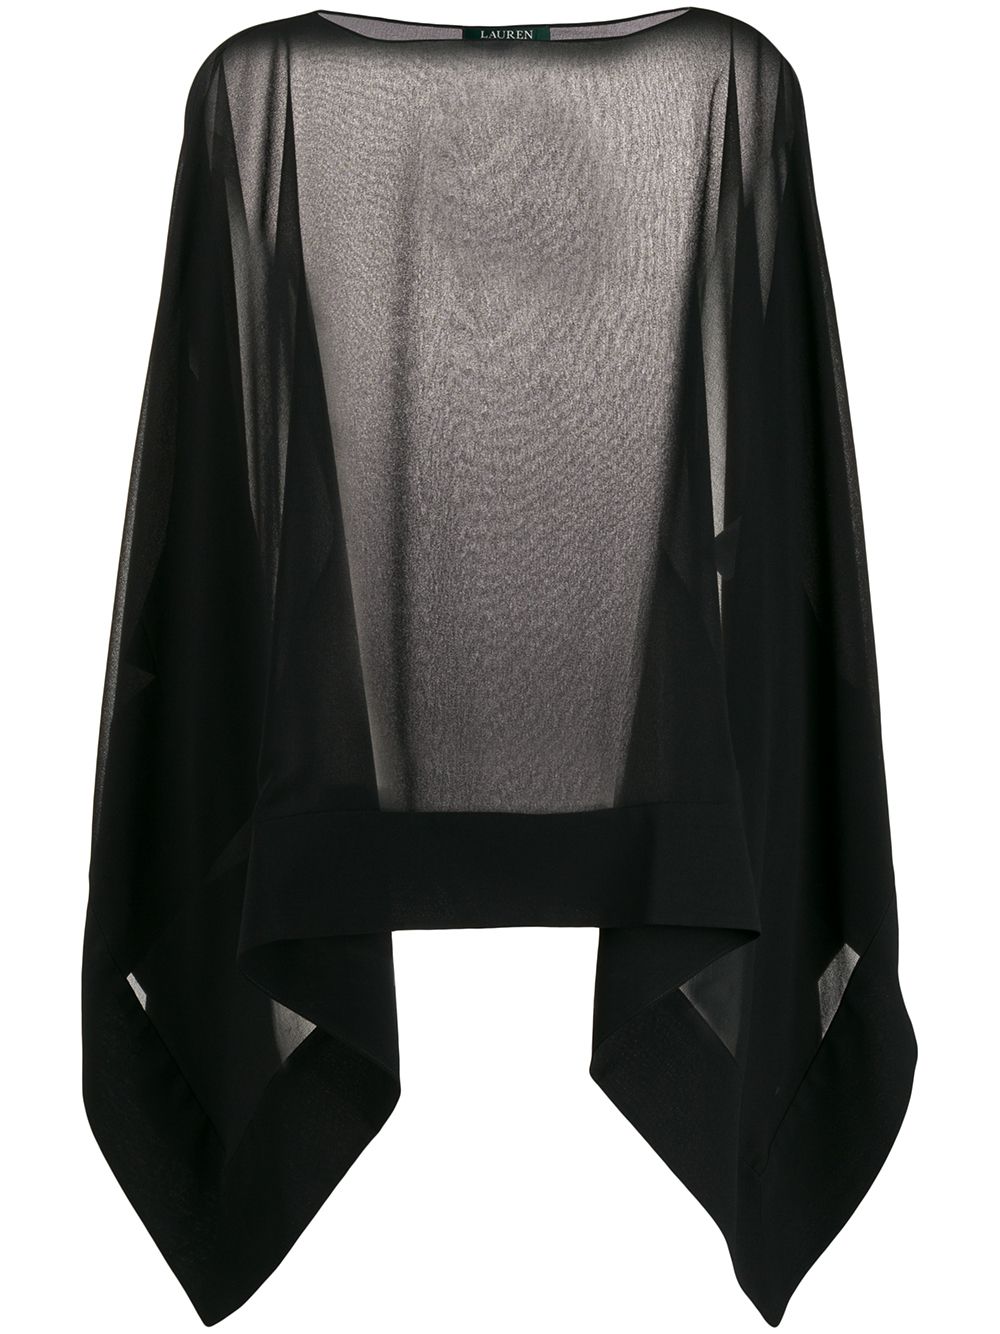 фото Lauren Ralph Lauren прозрачная блузка асимметричного кроя